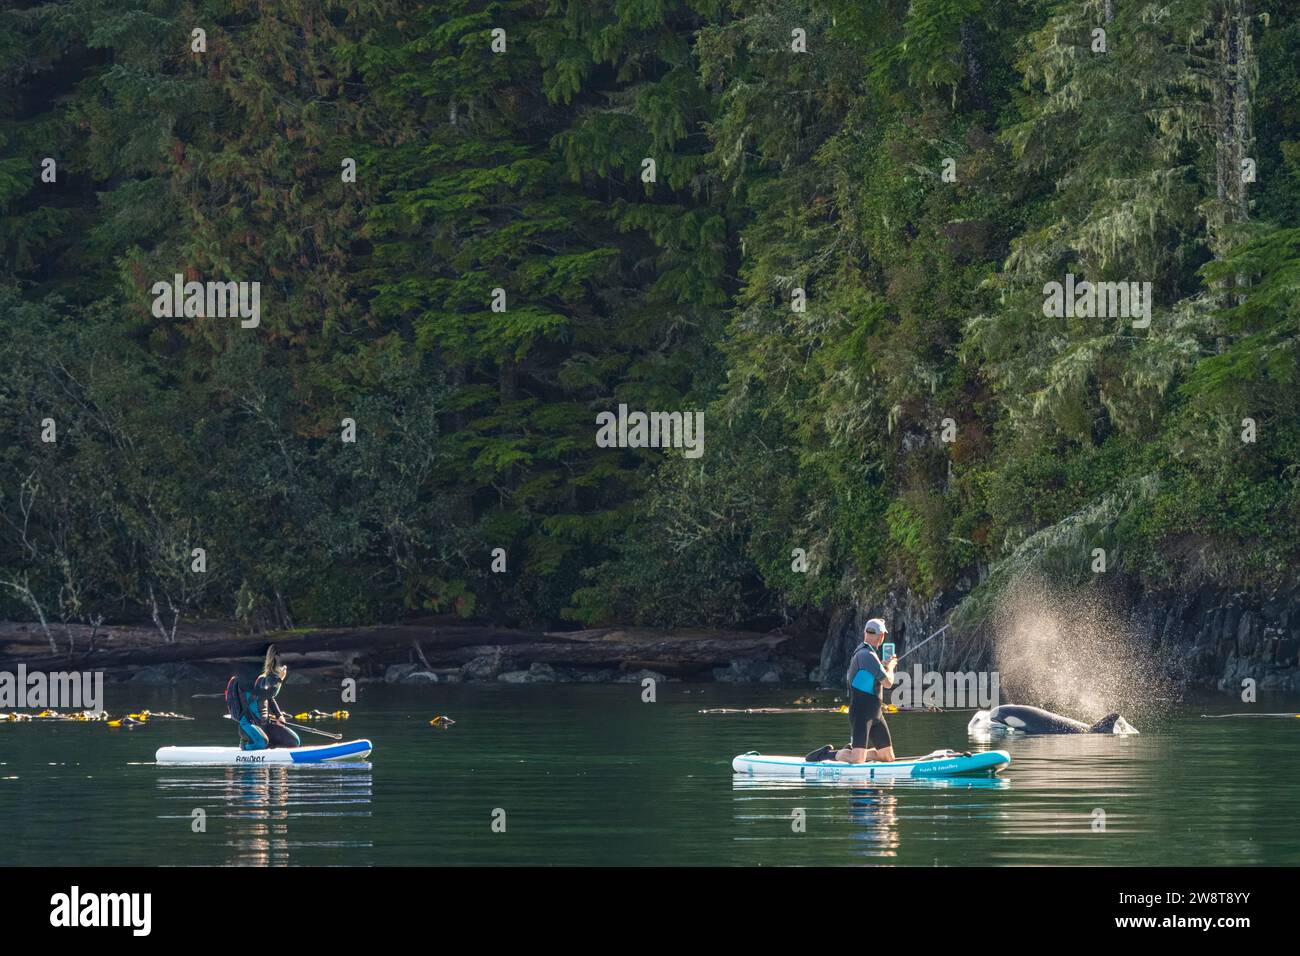 Due fortunati paddle-boarder che vengono passati da un'orca femminile nello stretto di Johnstrait, vicino a Telegraph Cove al largo dell'Isola di Vancouver, territorio delle prime Nazioni, TR Foto Stock